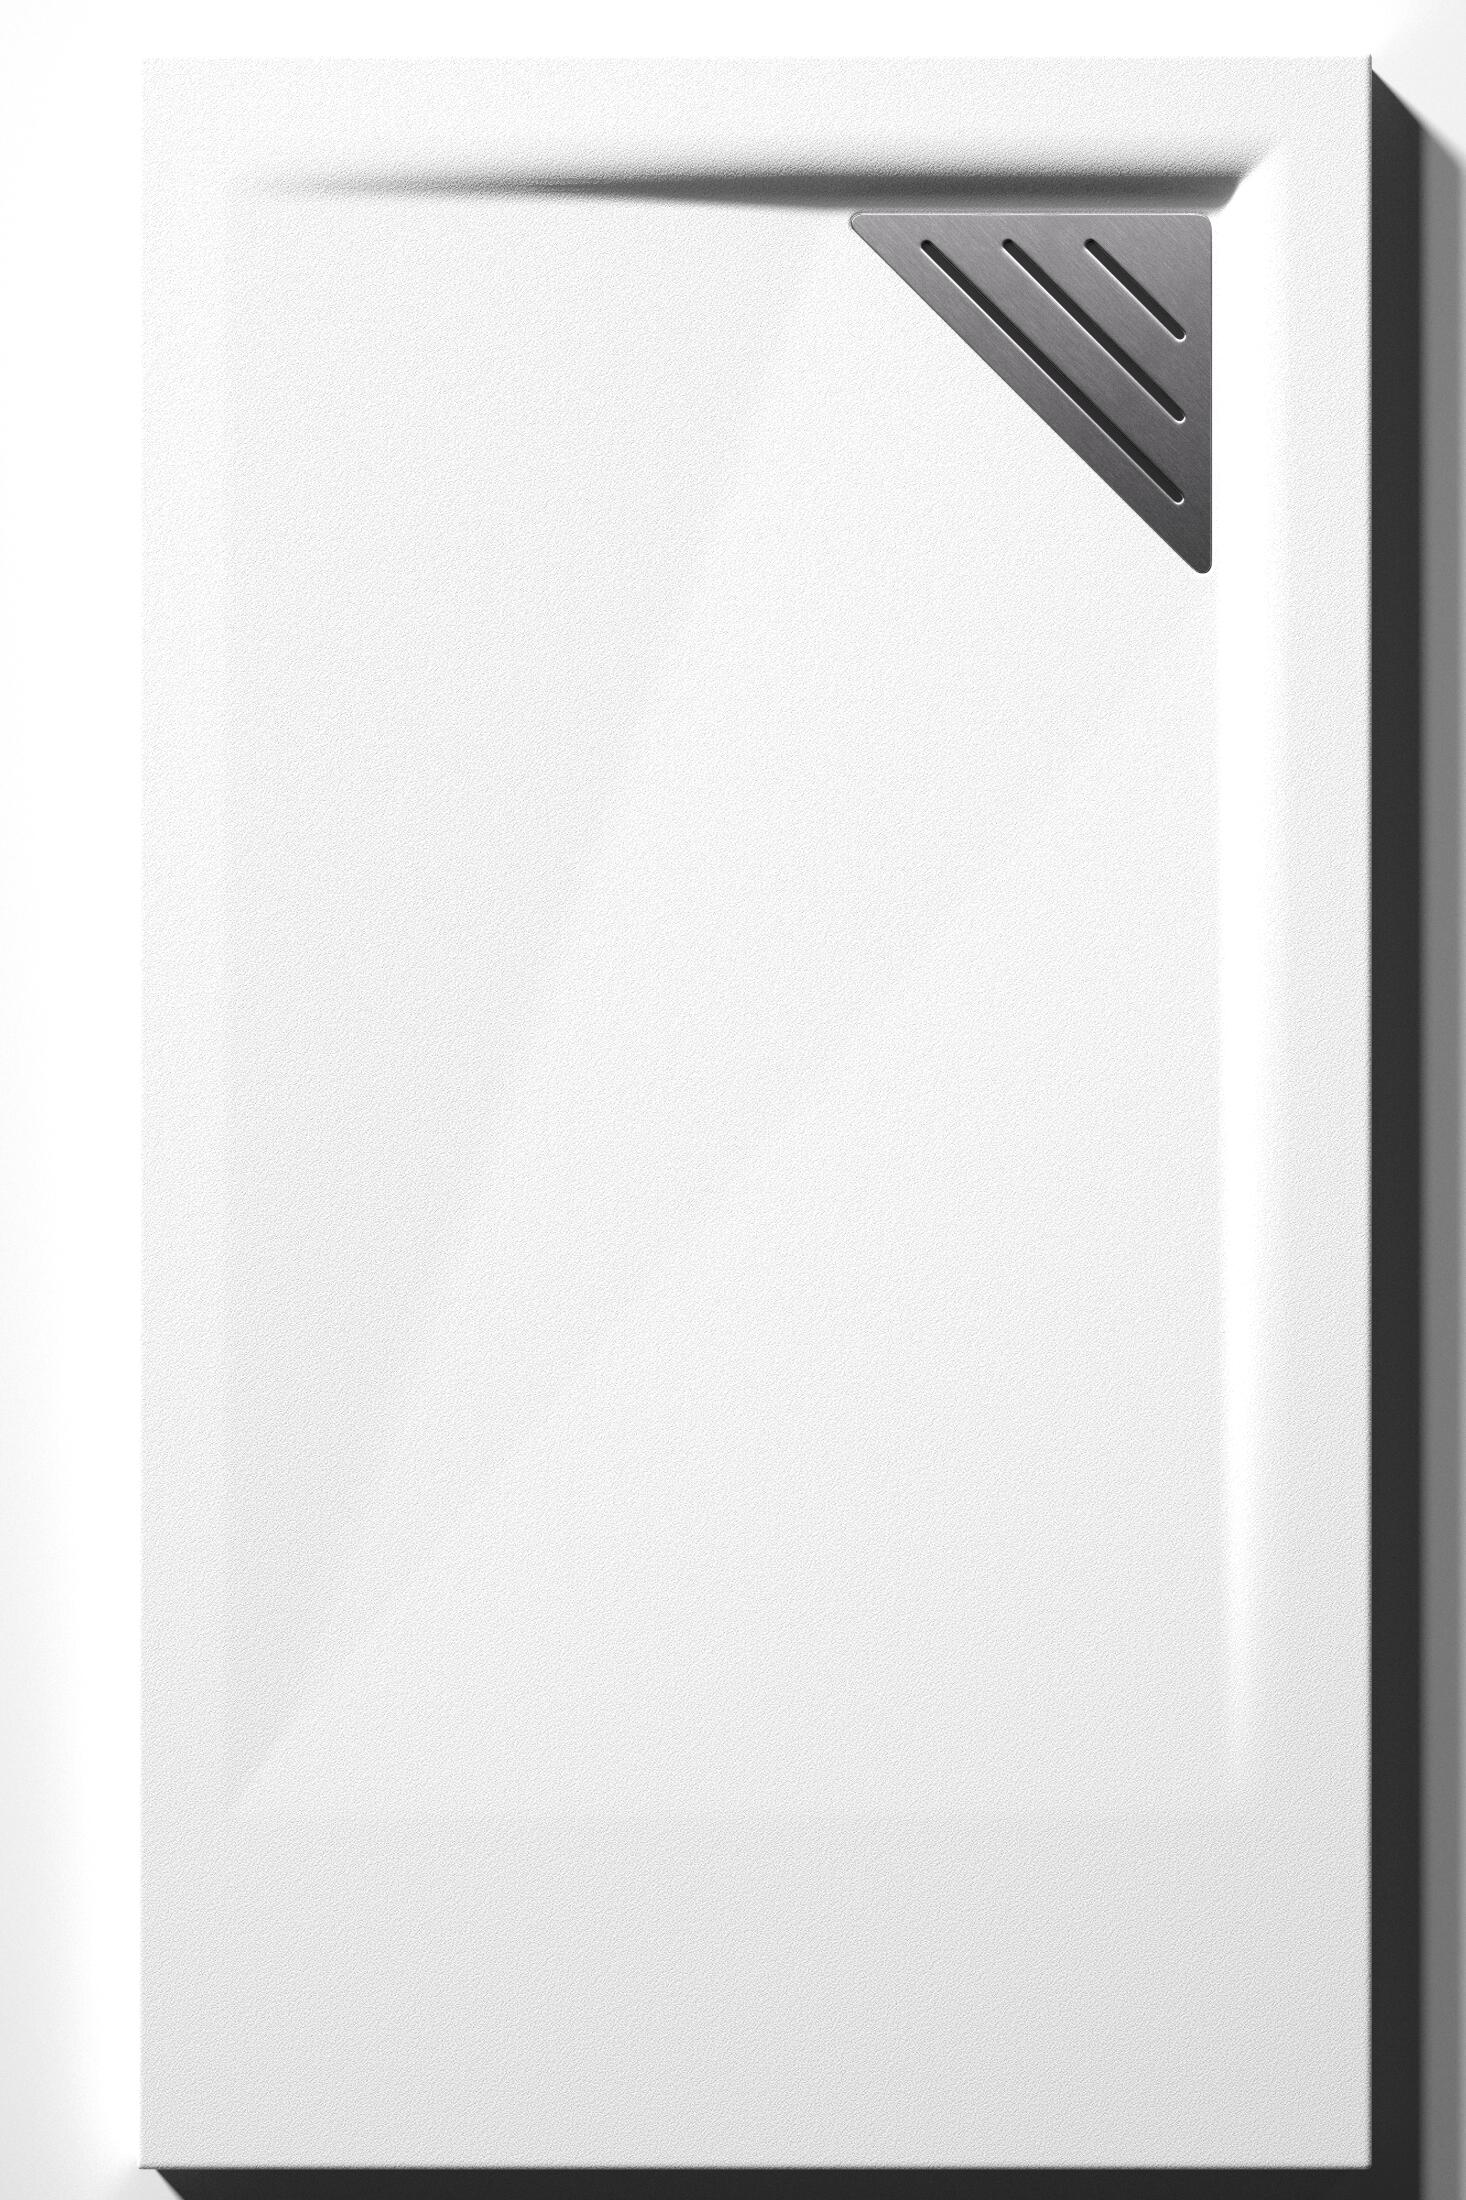 Plato de ducha meet 180x80 cm blanco